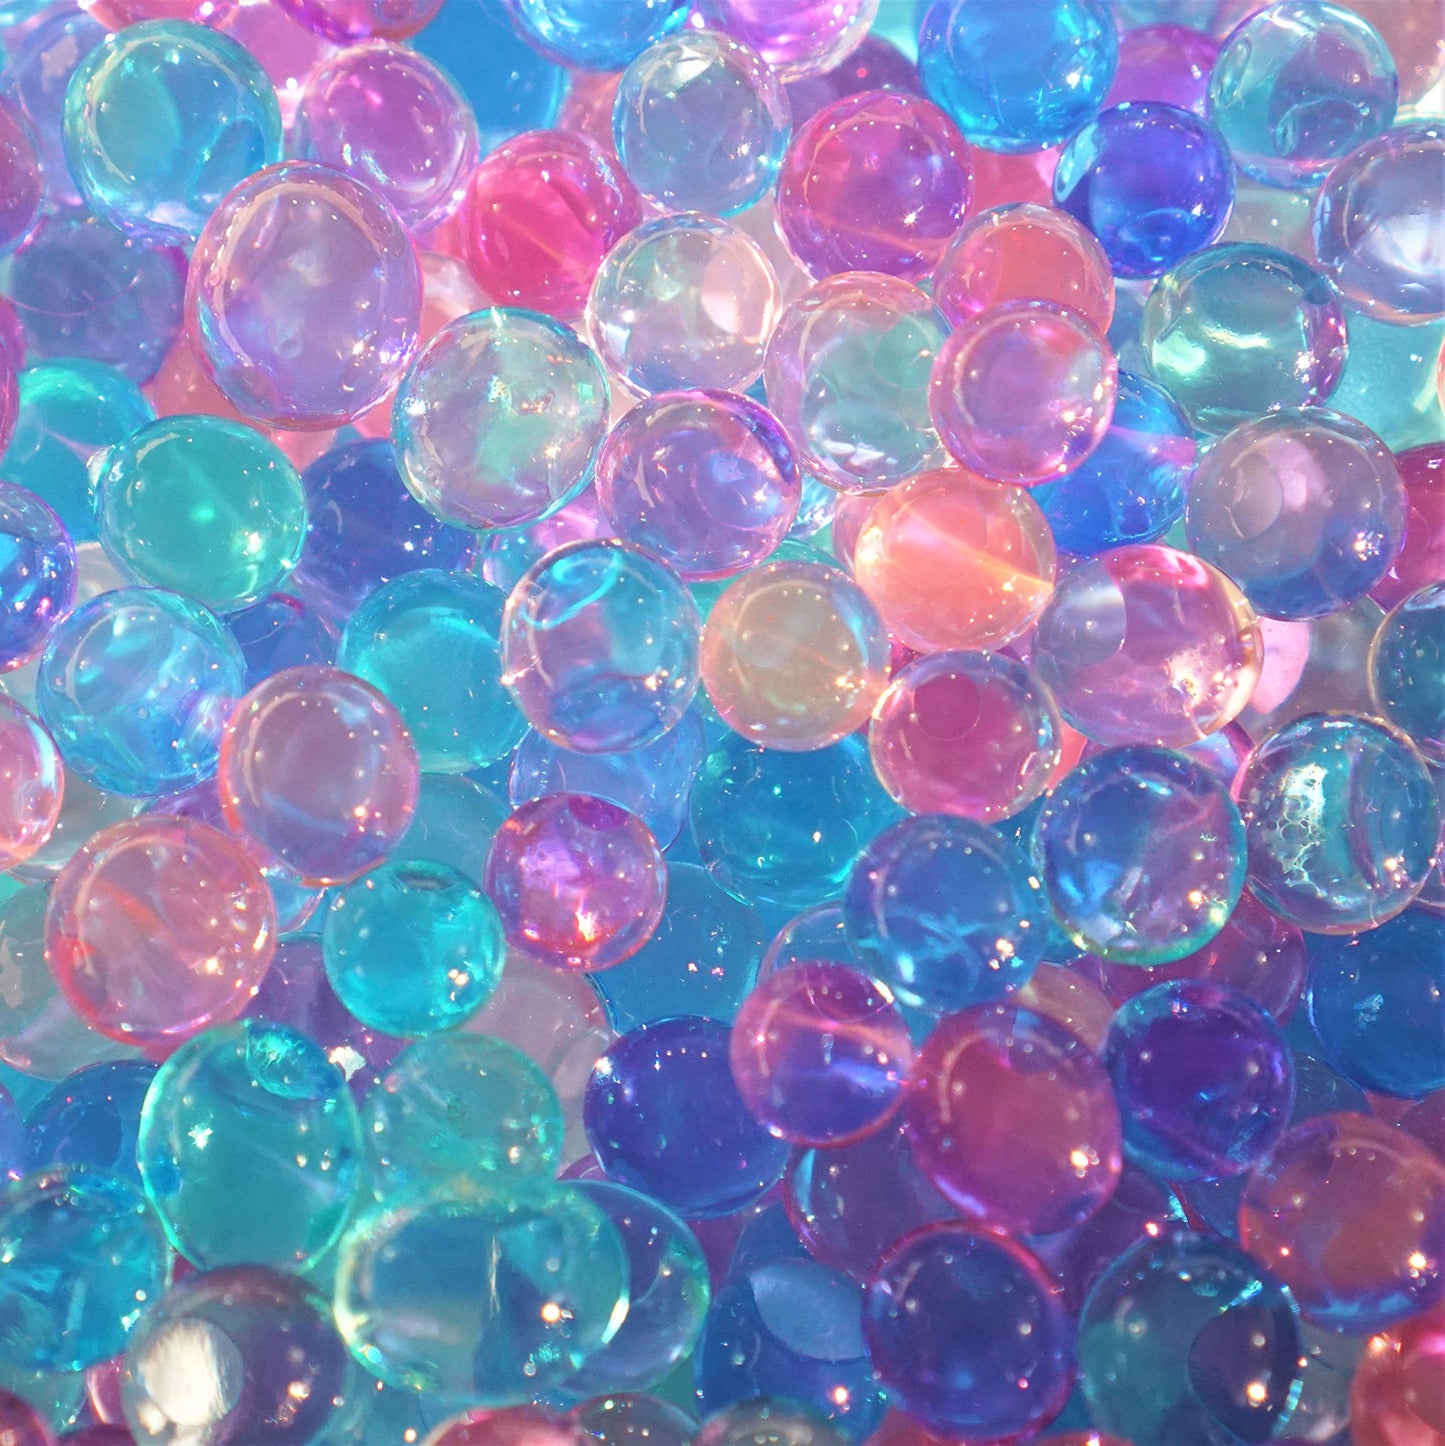 Dew Drops Ocean Water Beads Mermaid Lagoon Tactile Sensory Toys Bin Kit - 4 Mermaid Toy Dolls